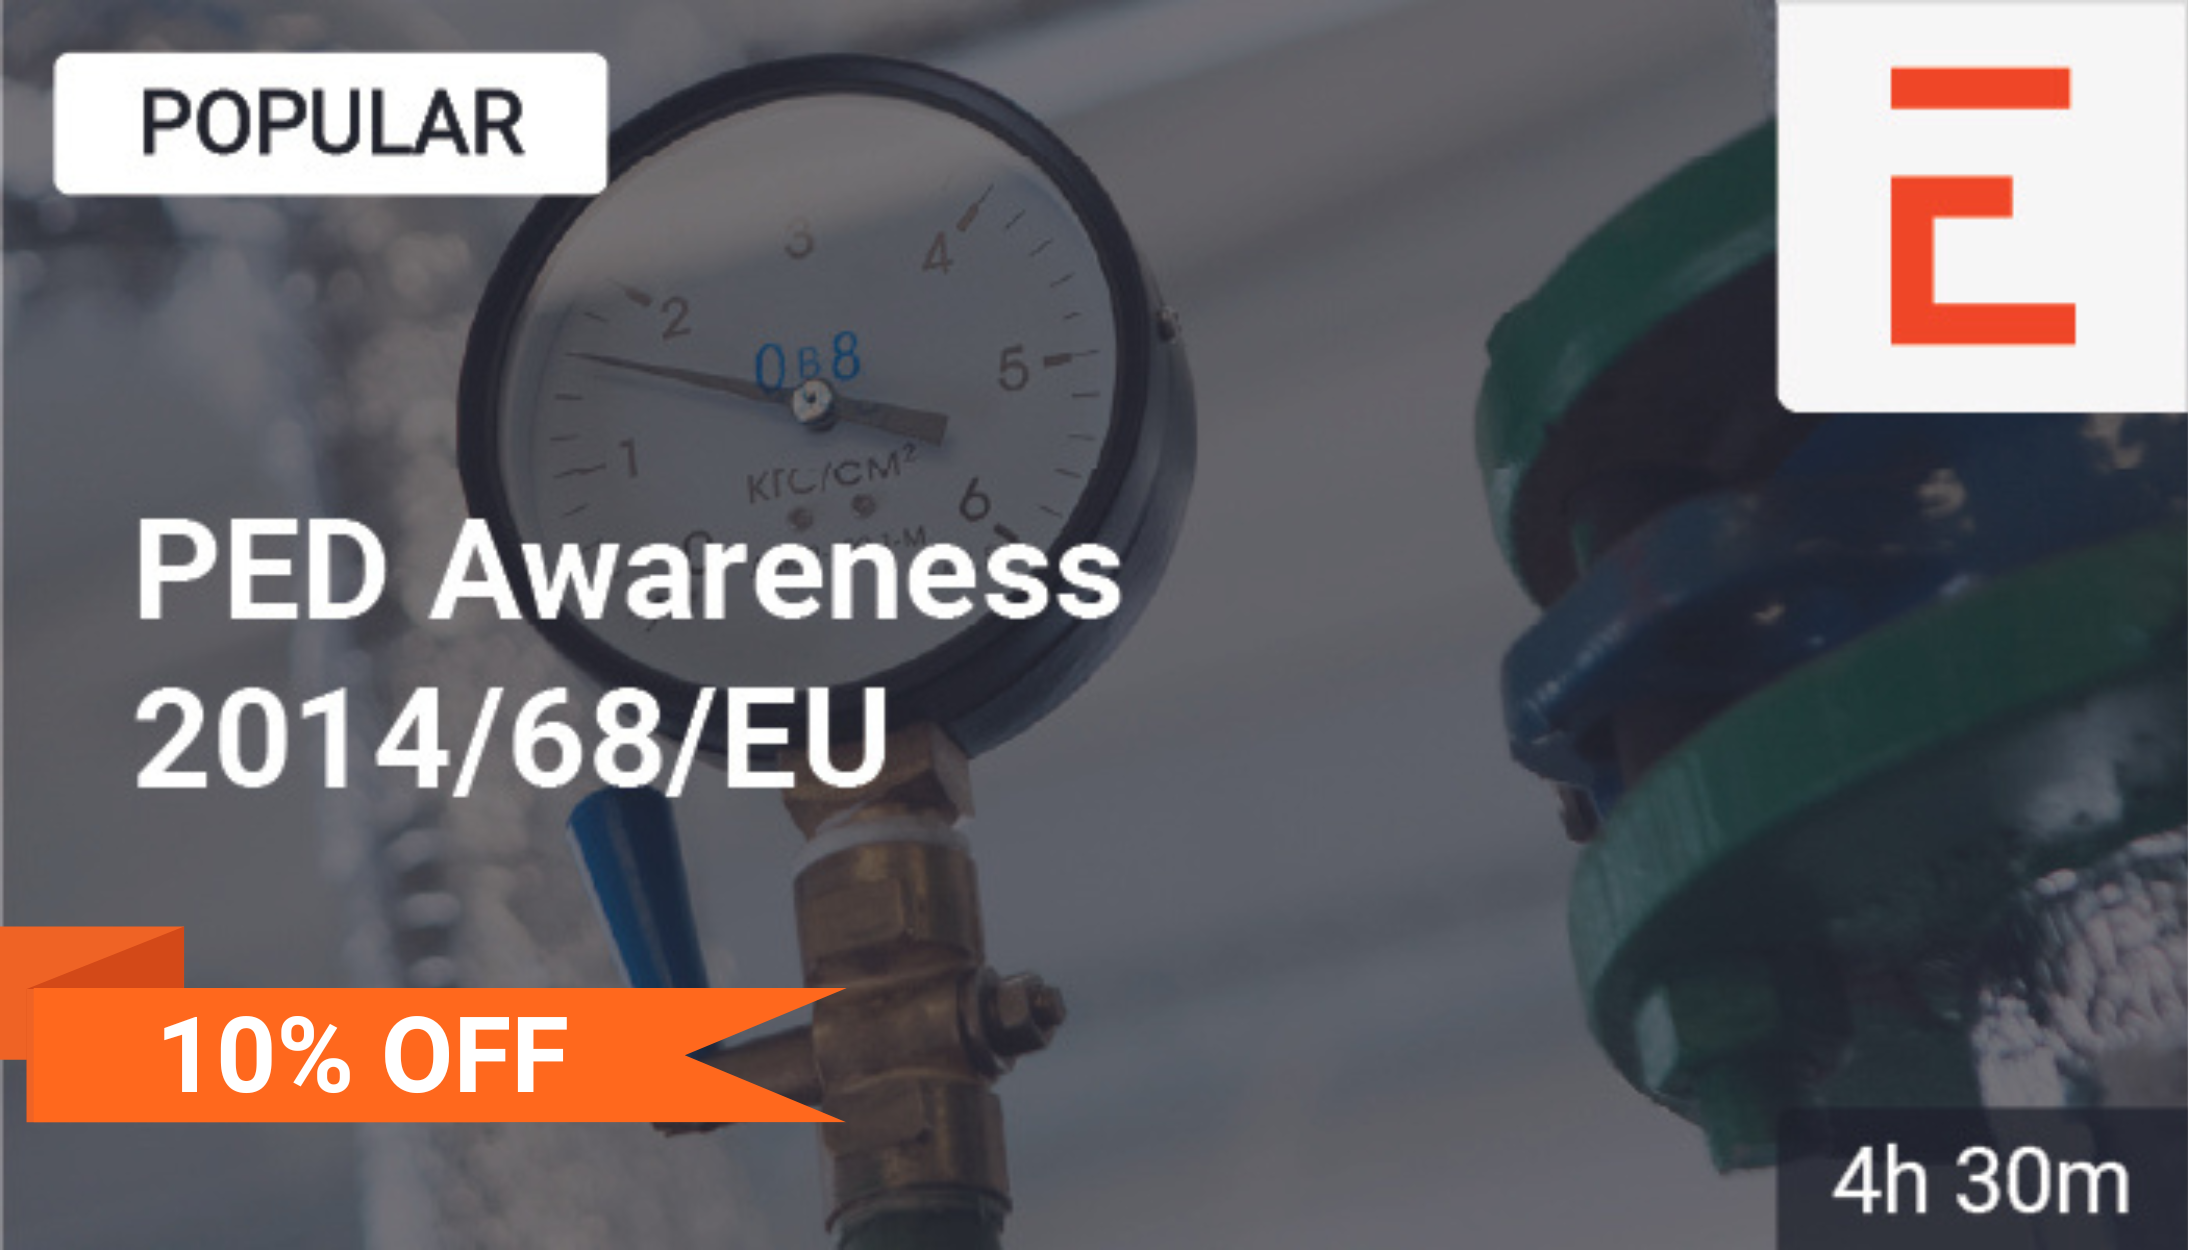 Pressure Equipment Directive (PED 2014/68/EU)